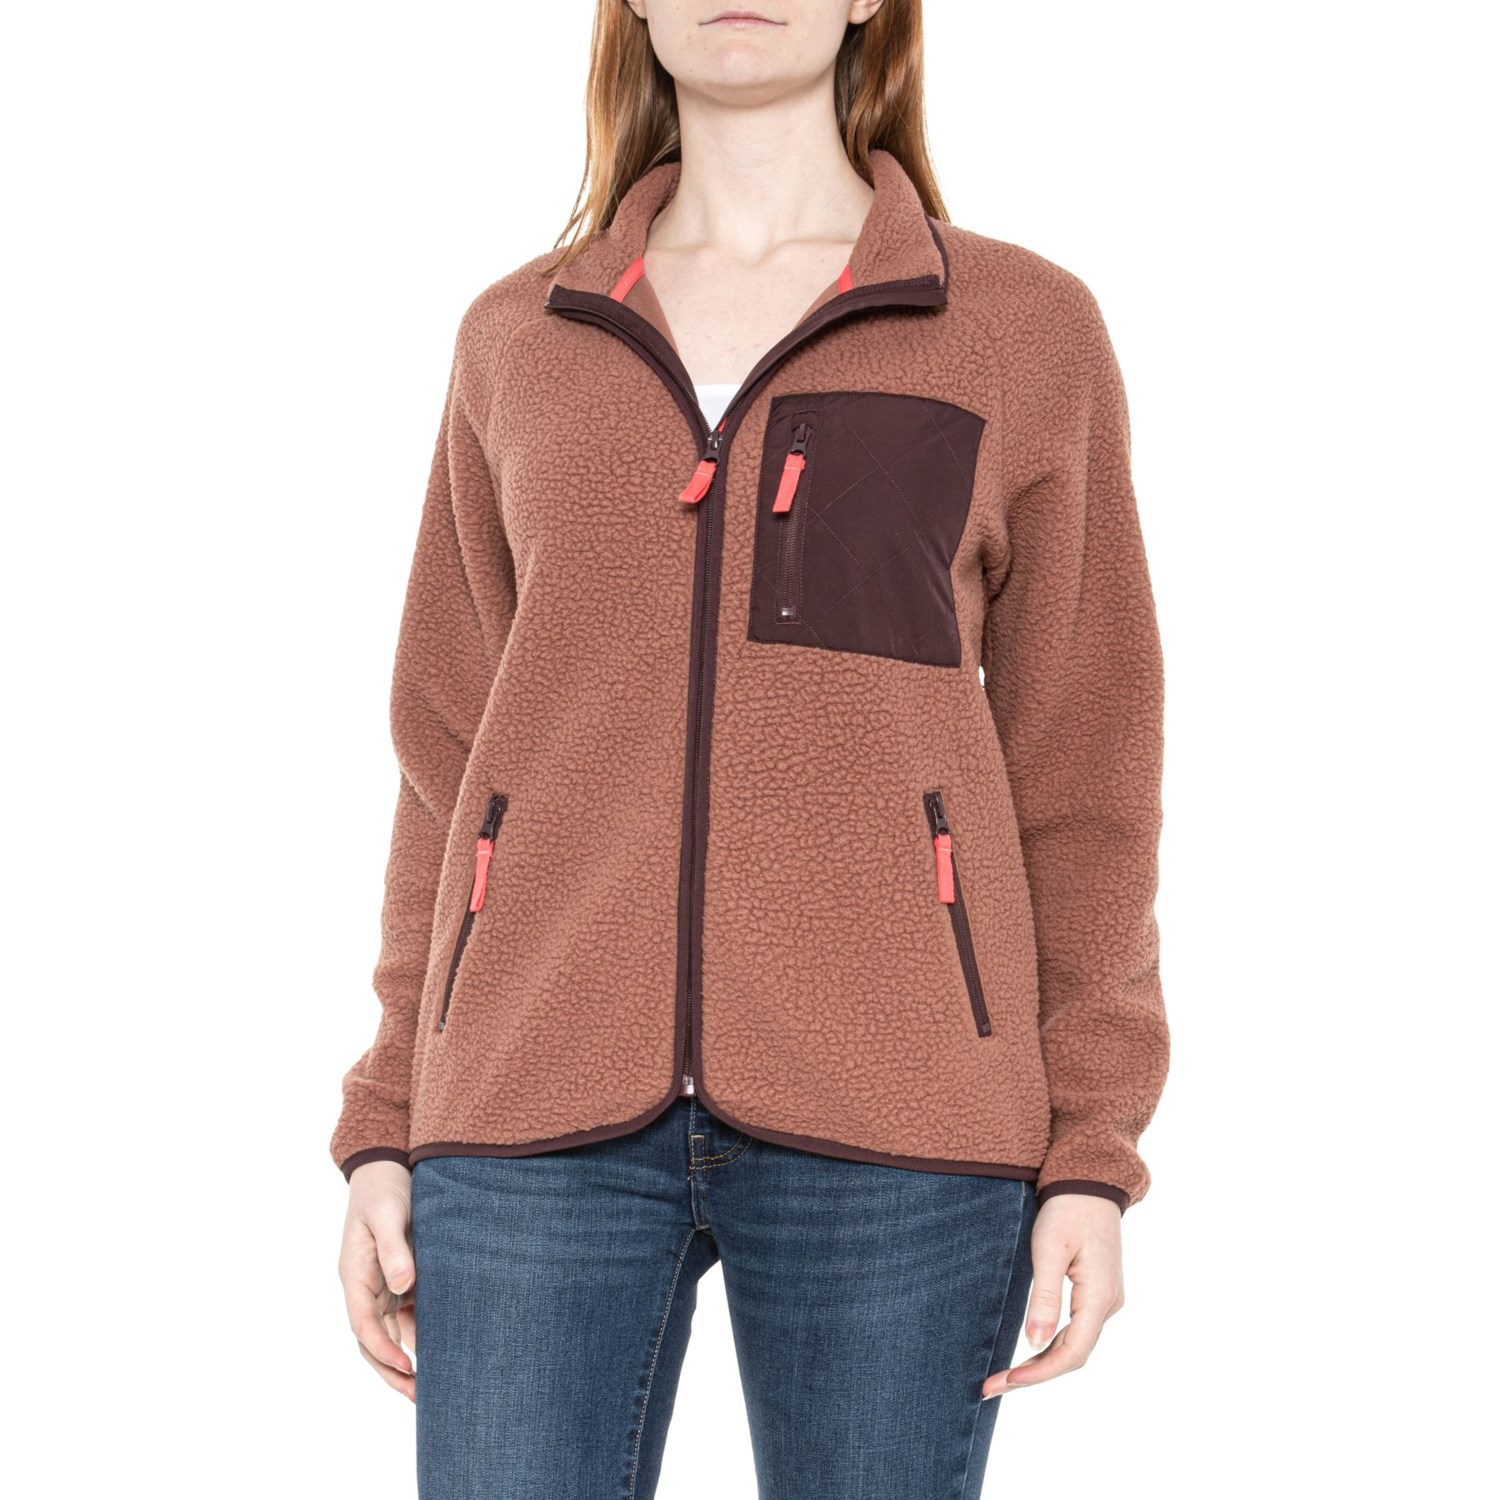 MONDETTA OUTDOOR PROJECT Color-Block Berber Jacket - Zip Front - Save 66%